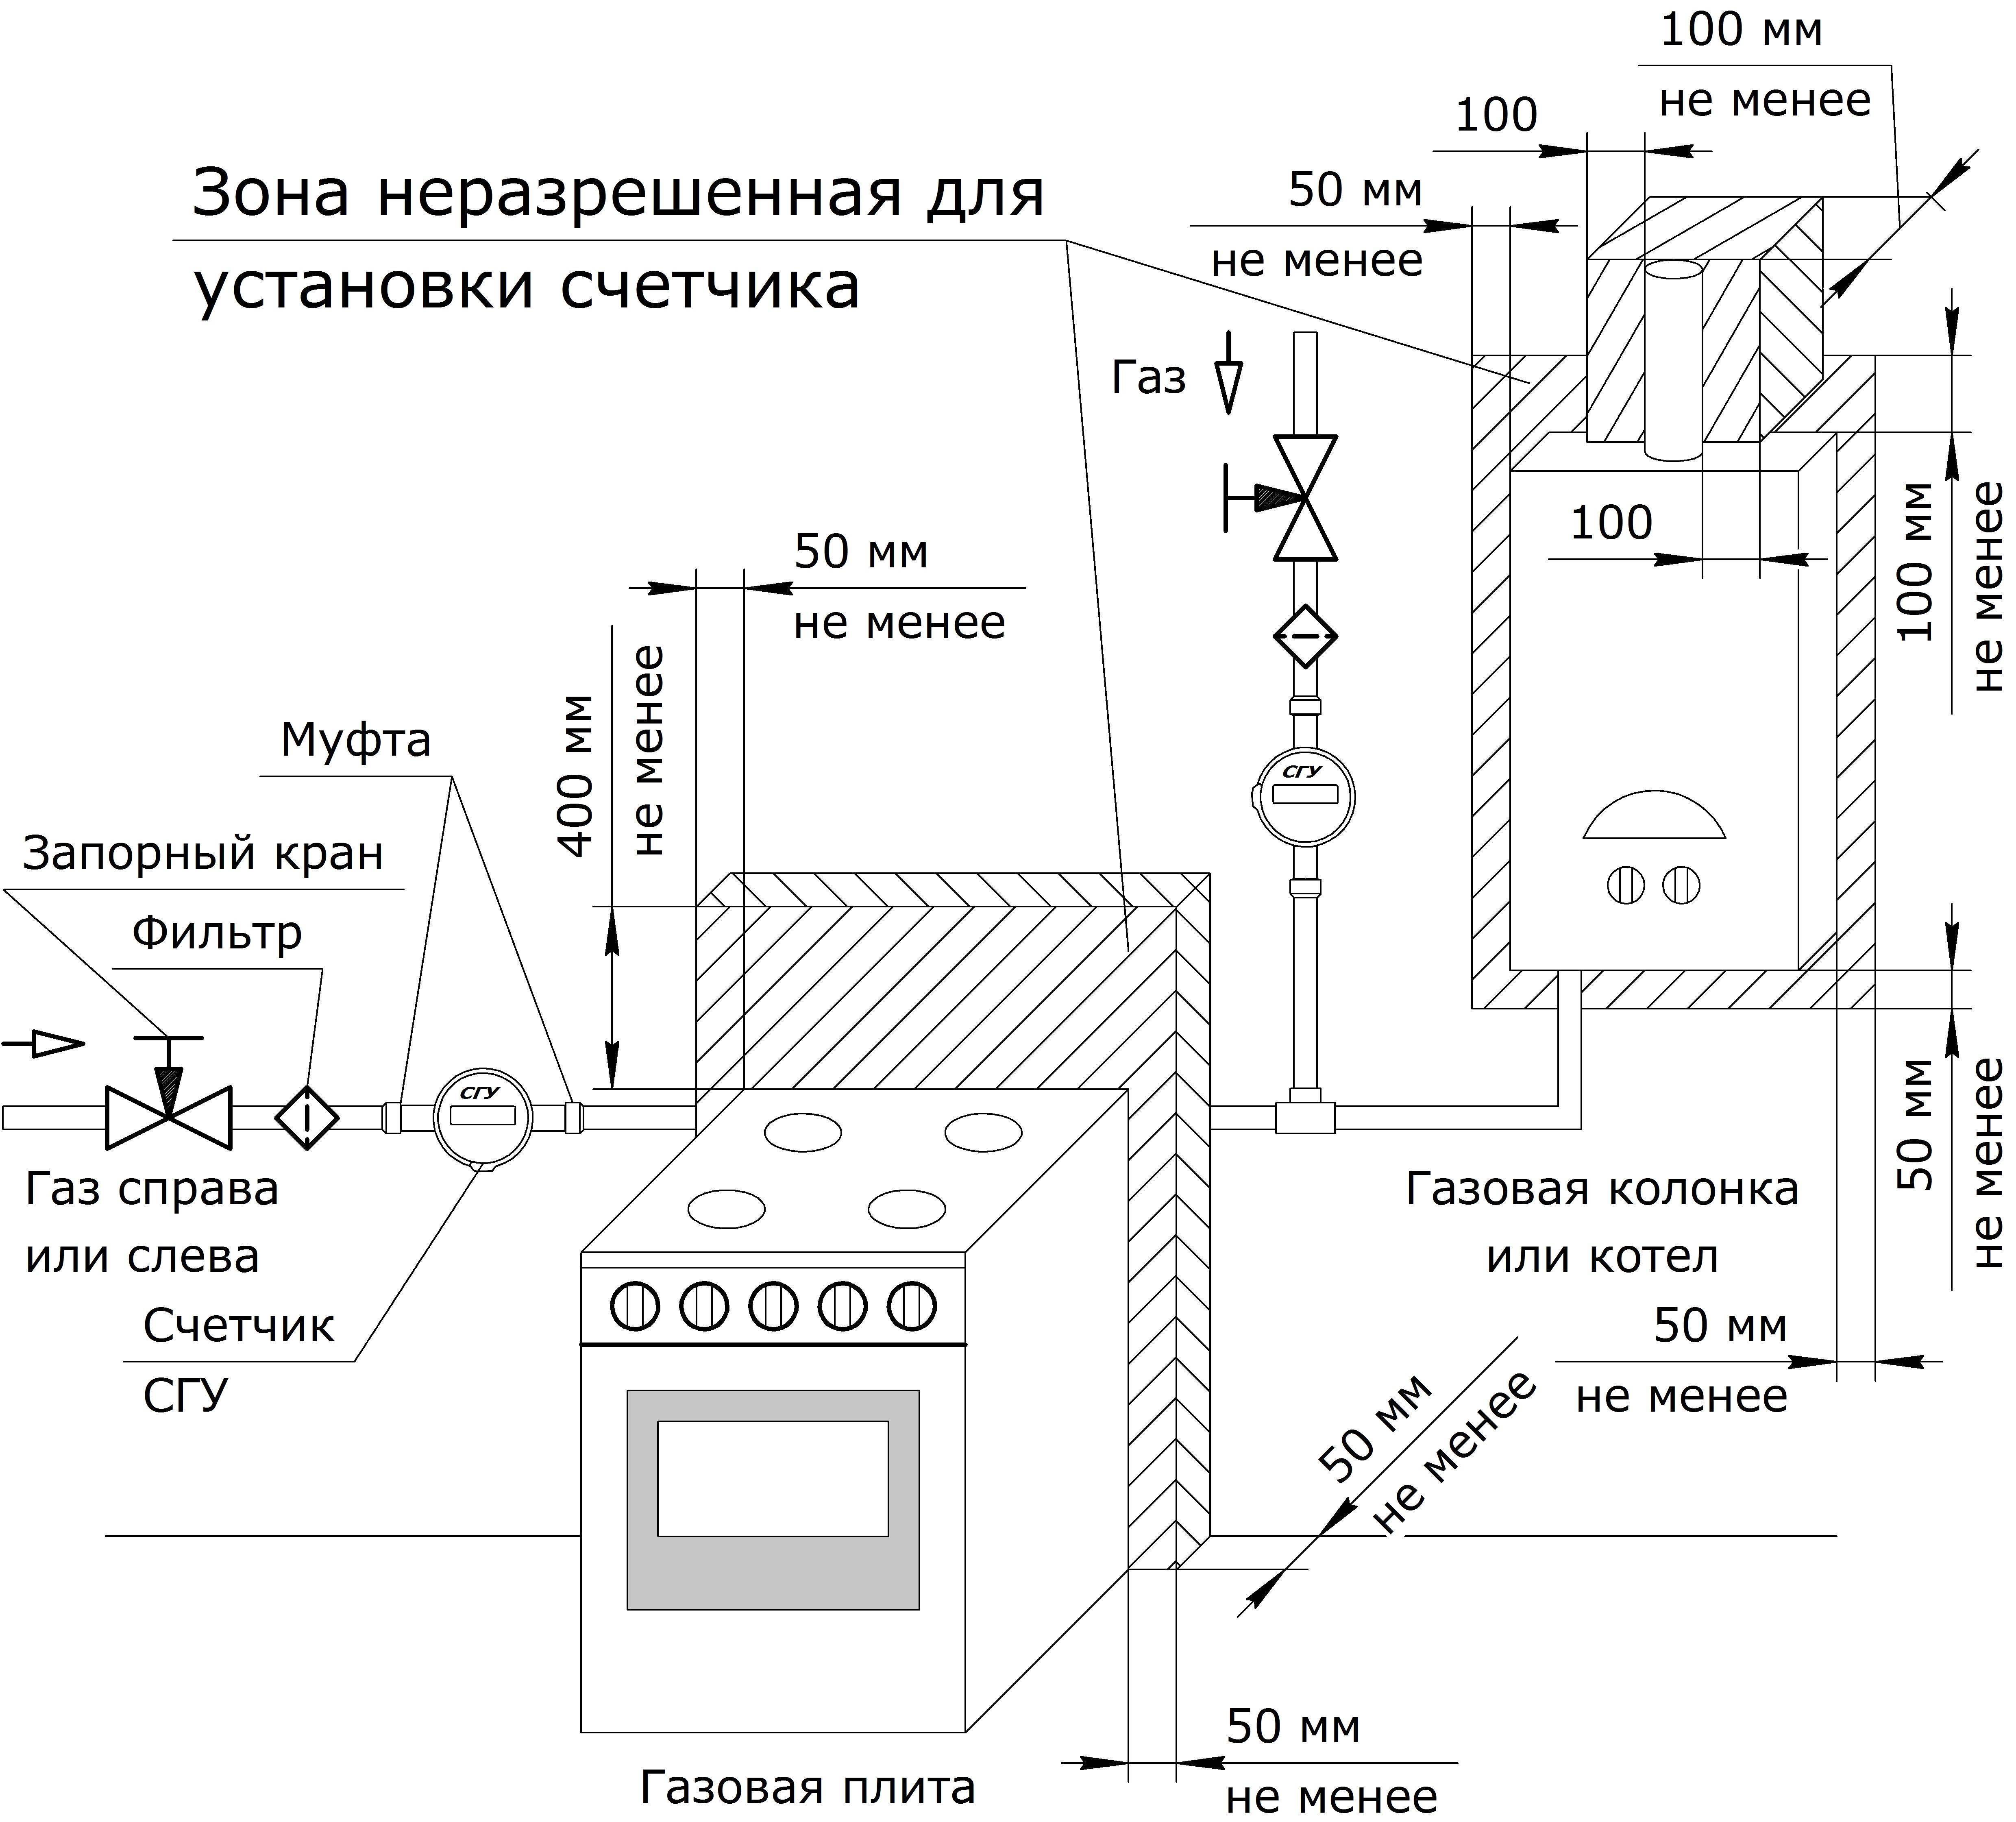 Как спрятать газовый котел на кухне: варианты с фото » всёокухне.ру